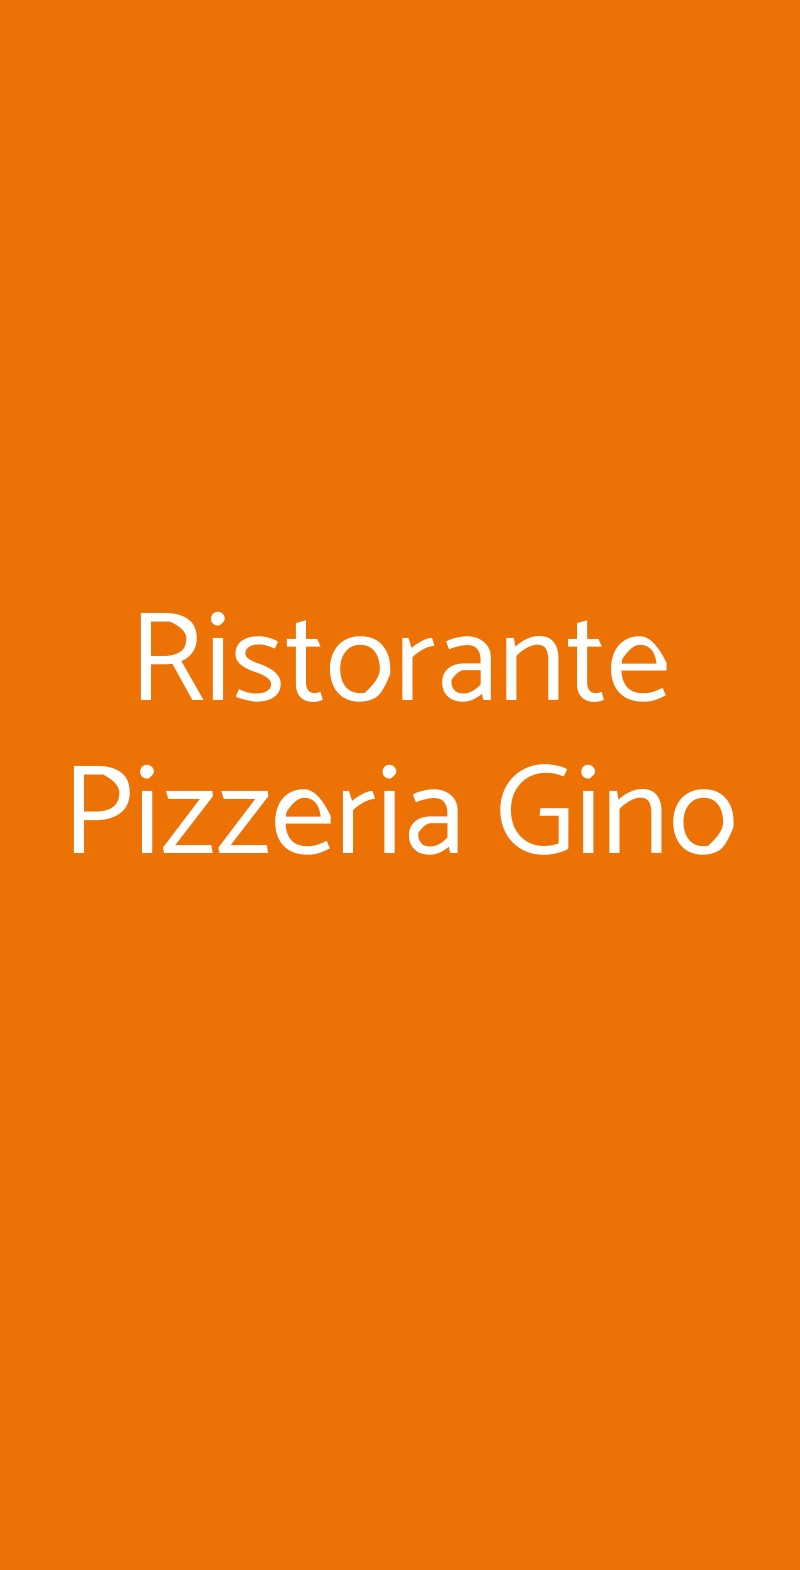 Ristorante Pizzeria Gino Arenzano menù 1 pagina